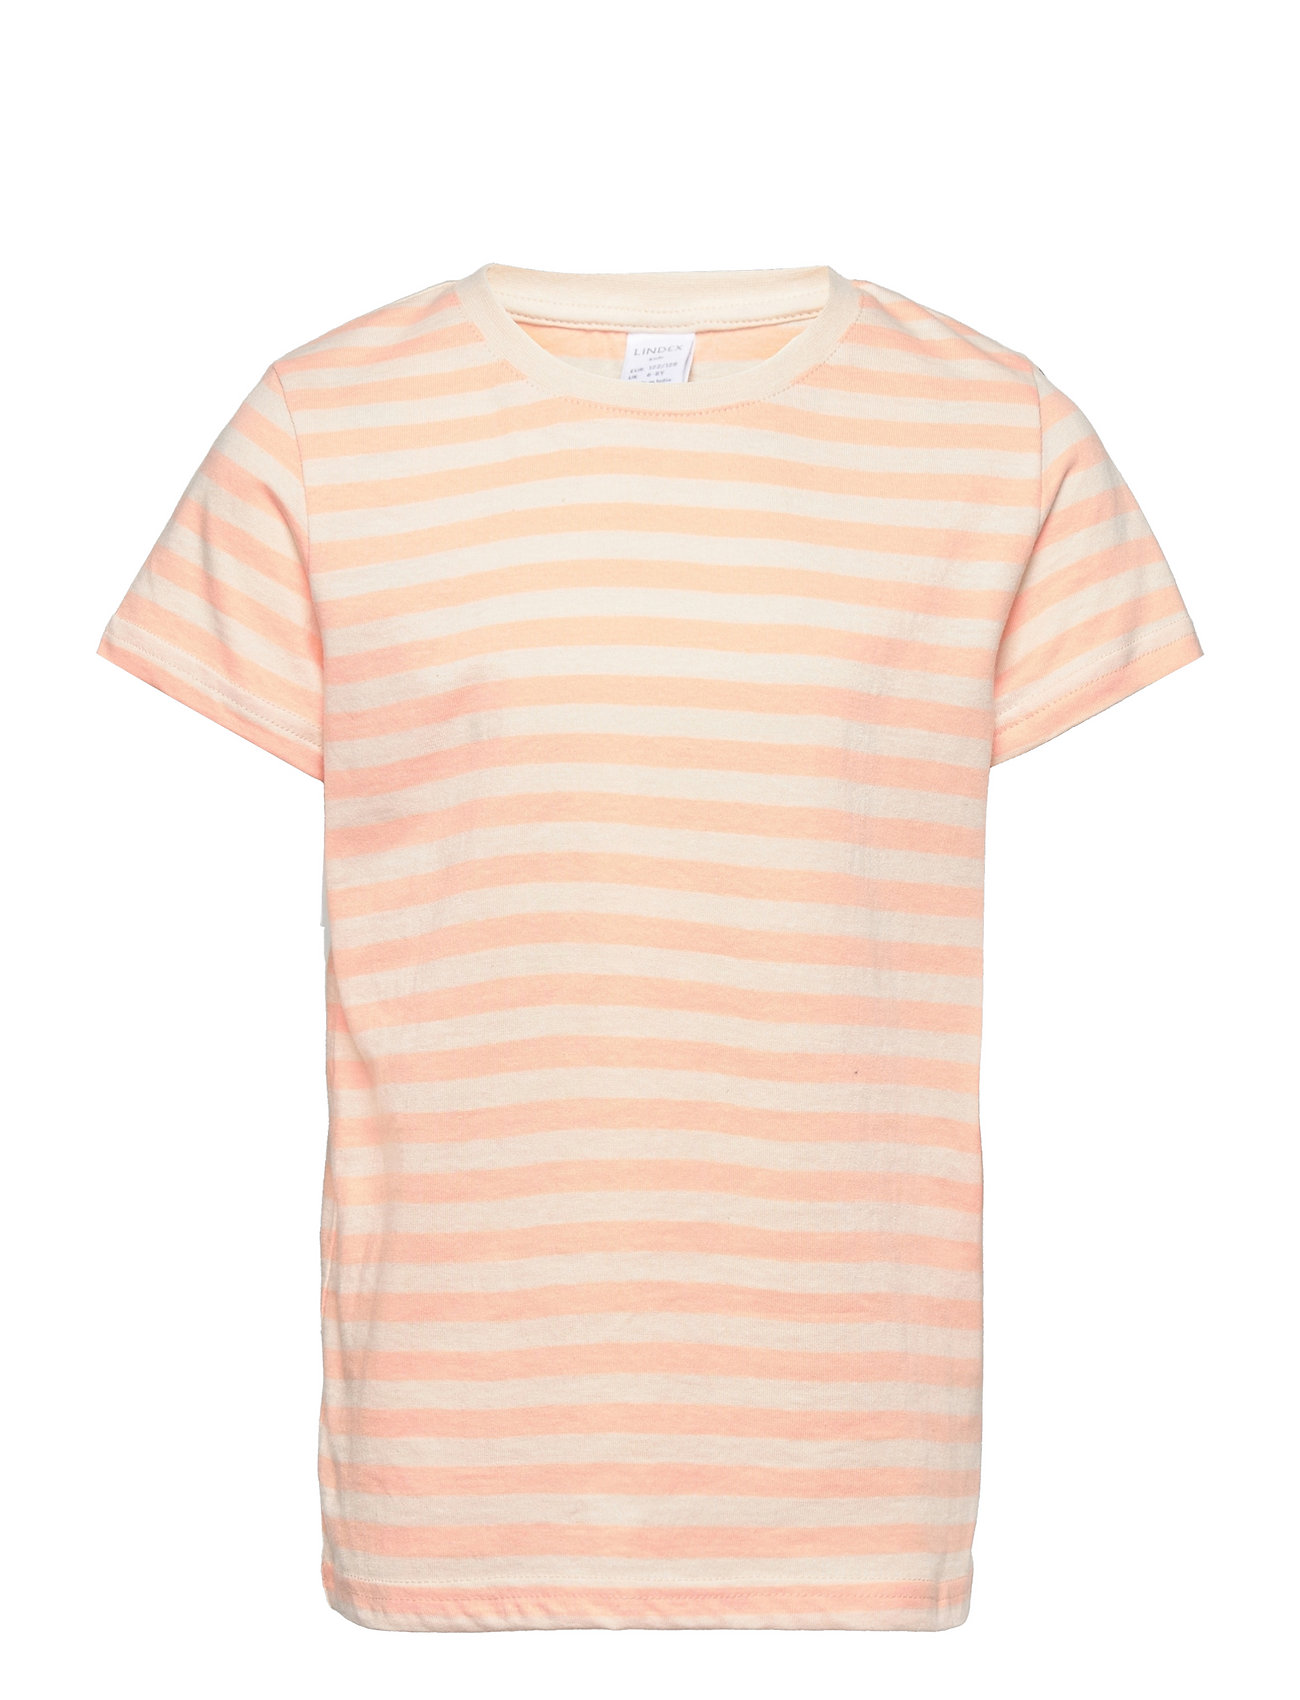 Top S S Basic Y D Stripe T-shirts Short-sleeved Orange Lindex